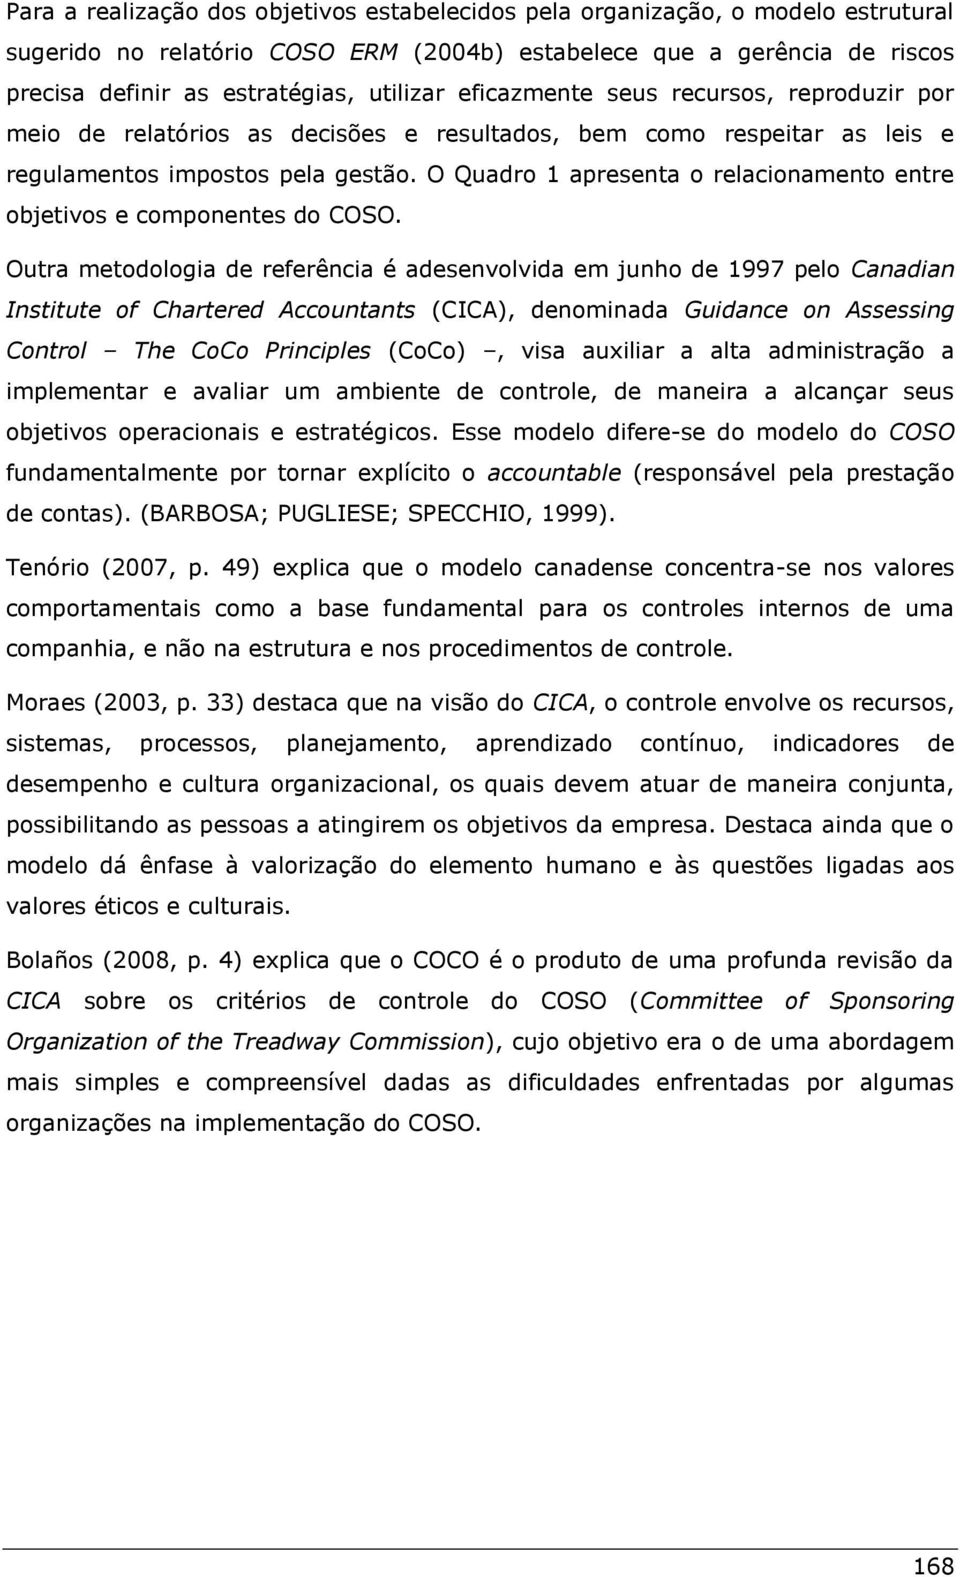 O Quadro 1 apresenta o relacionamento entre objetivos e componentes do COSO.